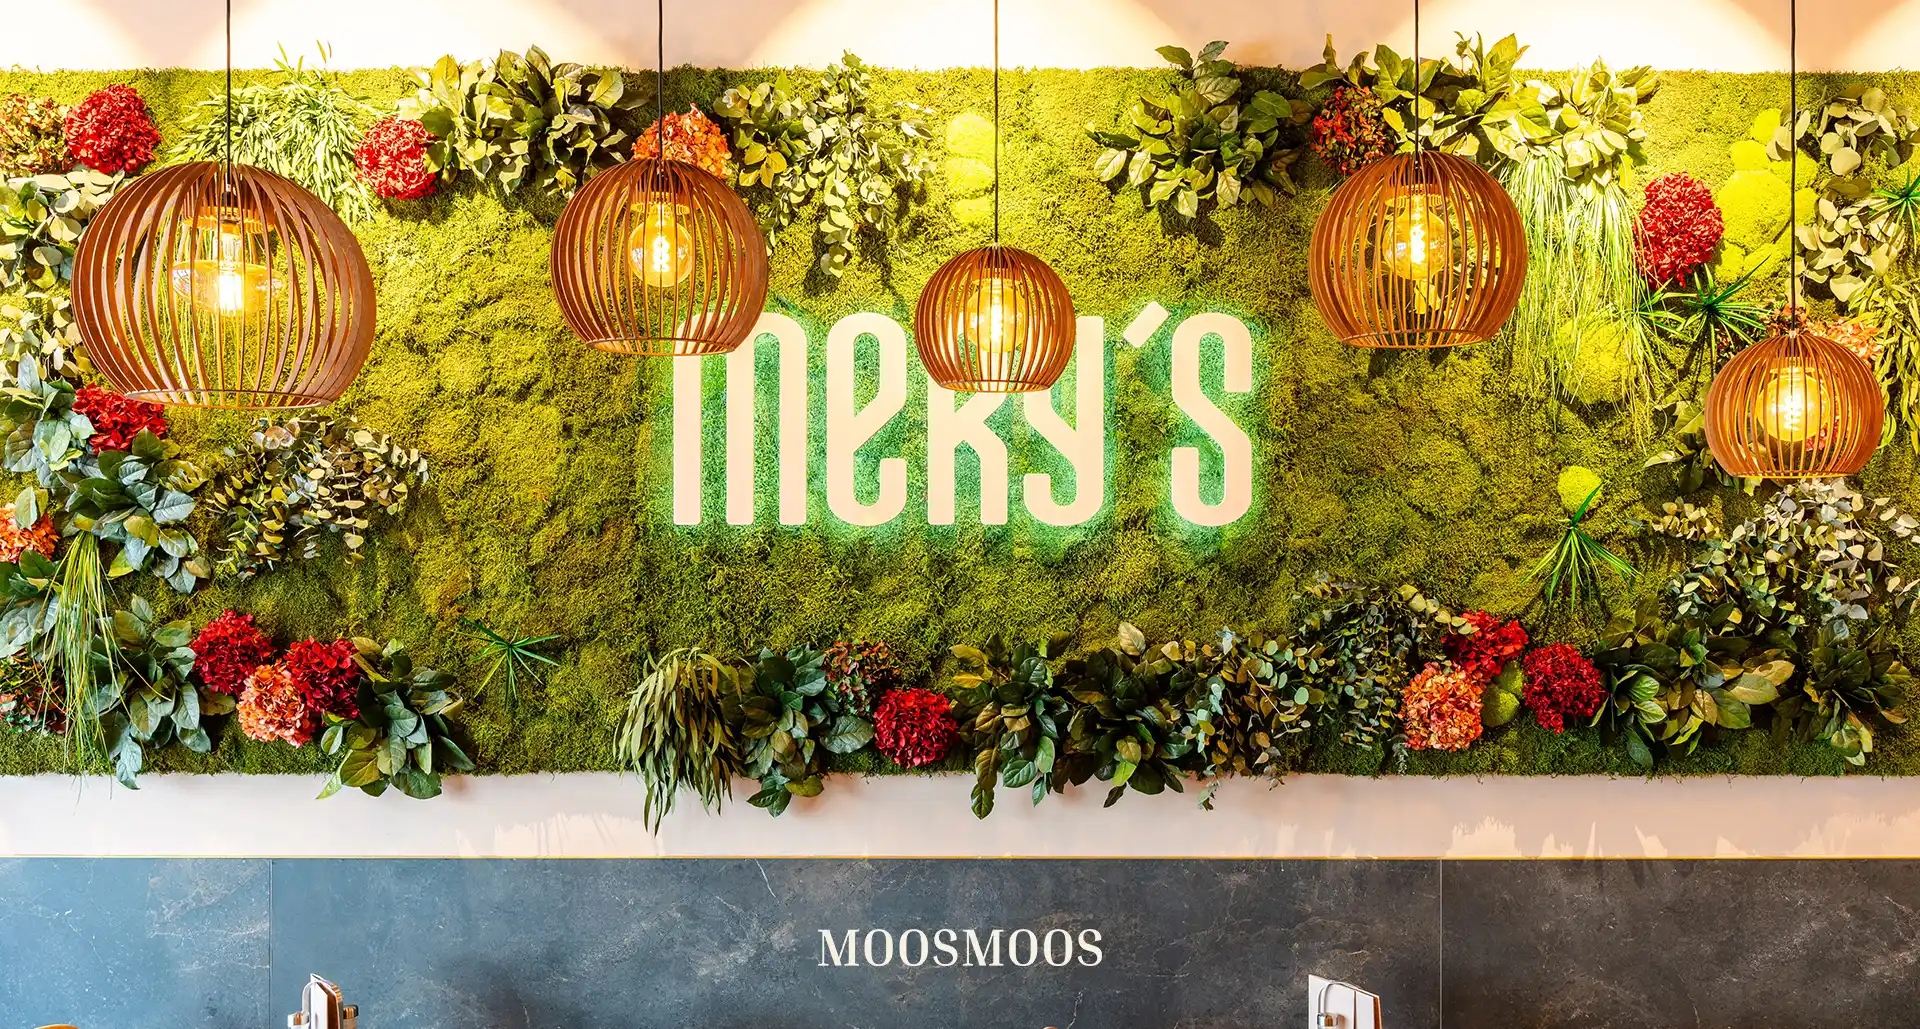 MOOSMOOS Blumenwand / Flowerwall mit echten Blumen, Pflanzen und Moosen mit Logo